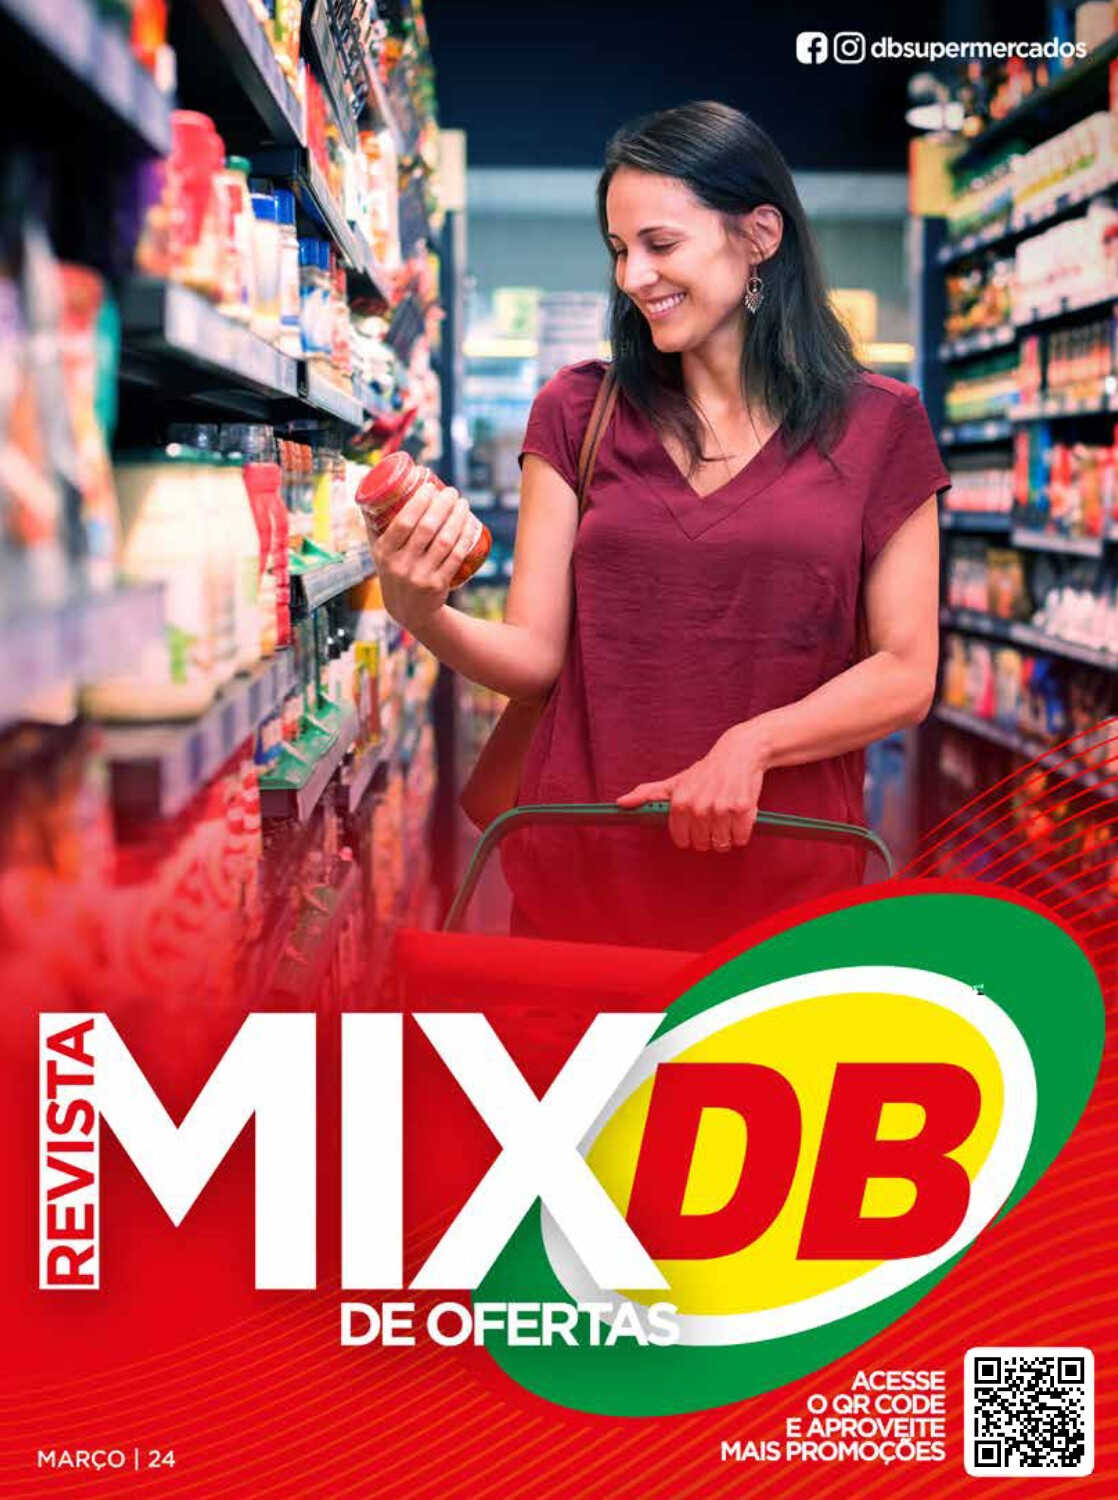 Ofertas DB Supermercados até 31/03